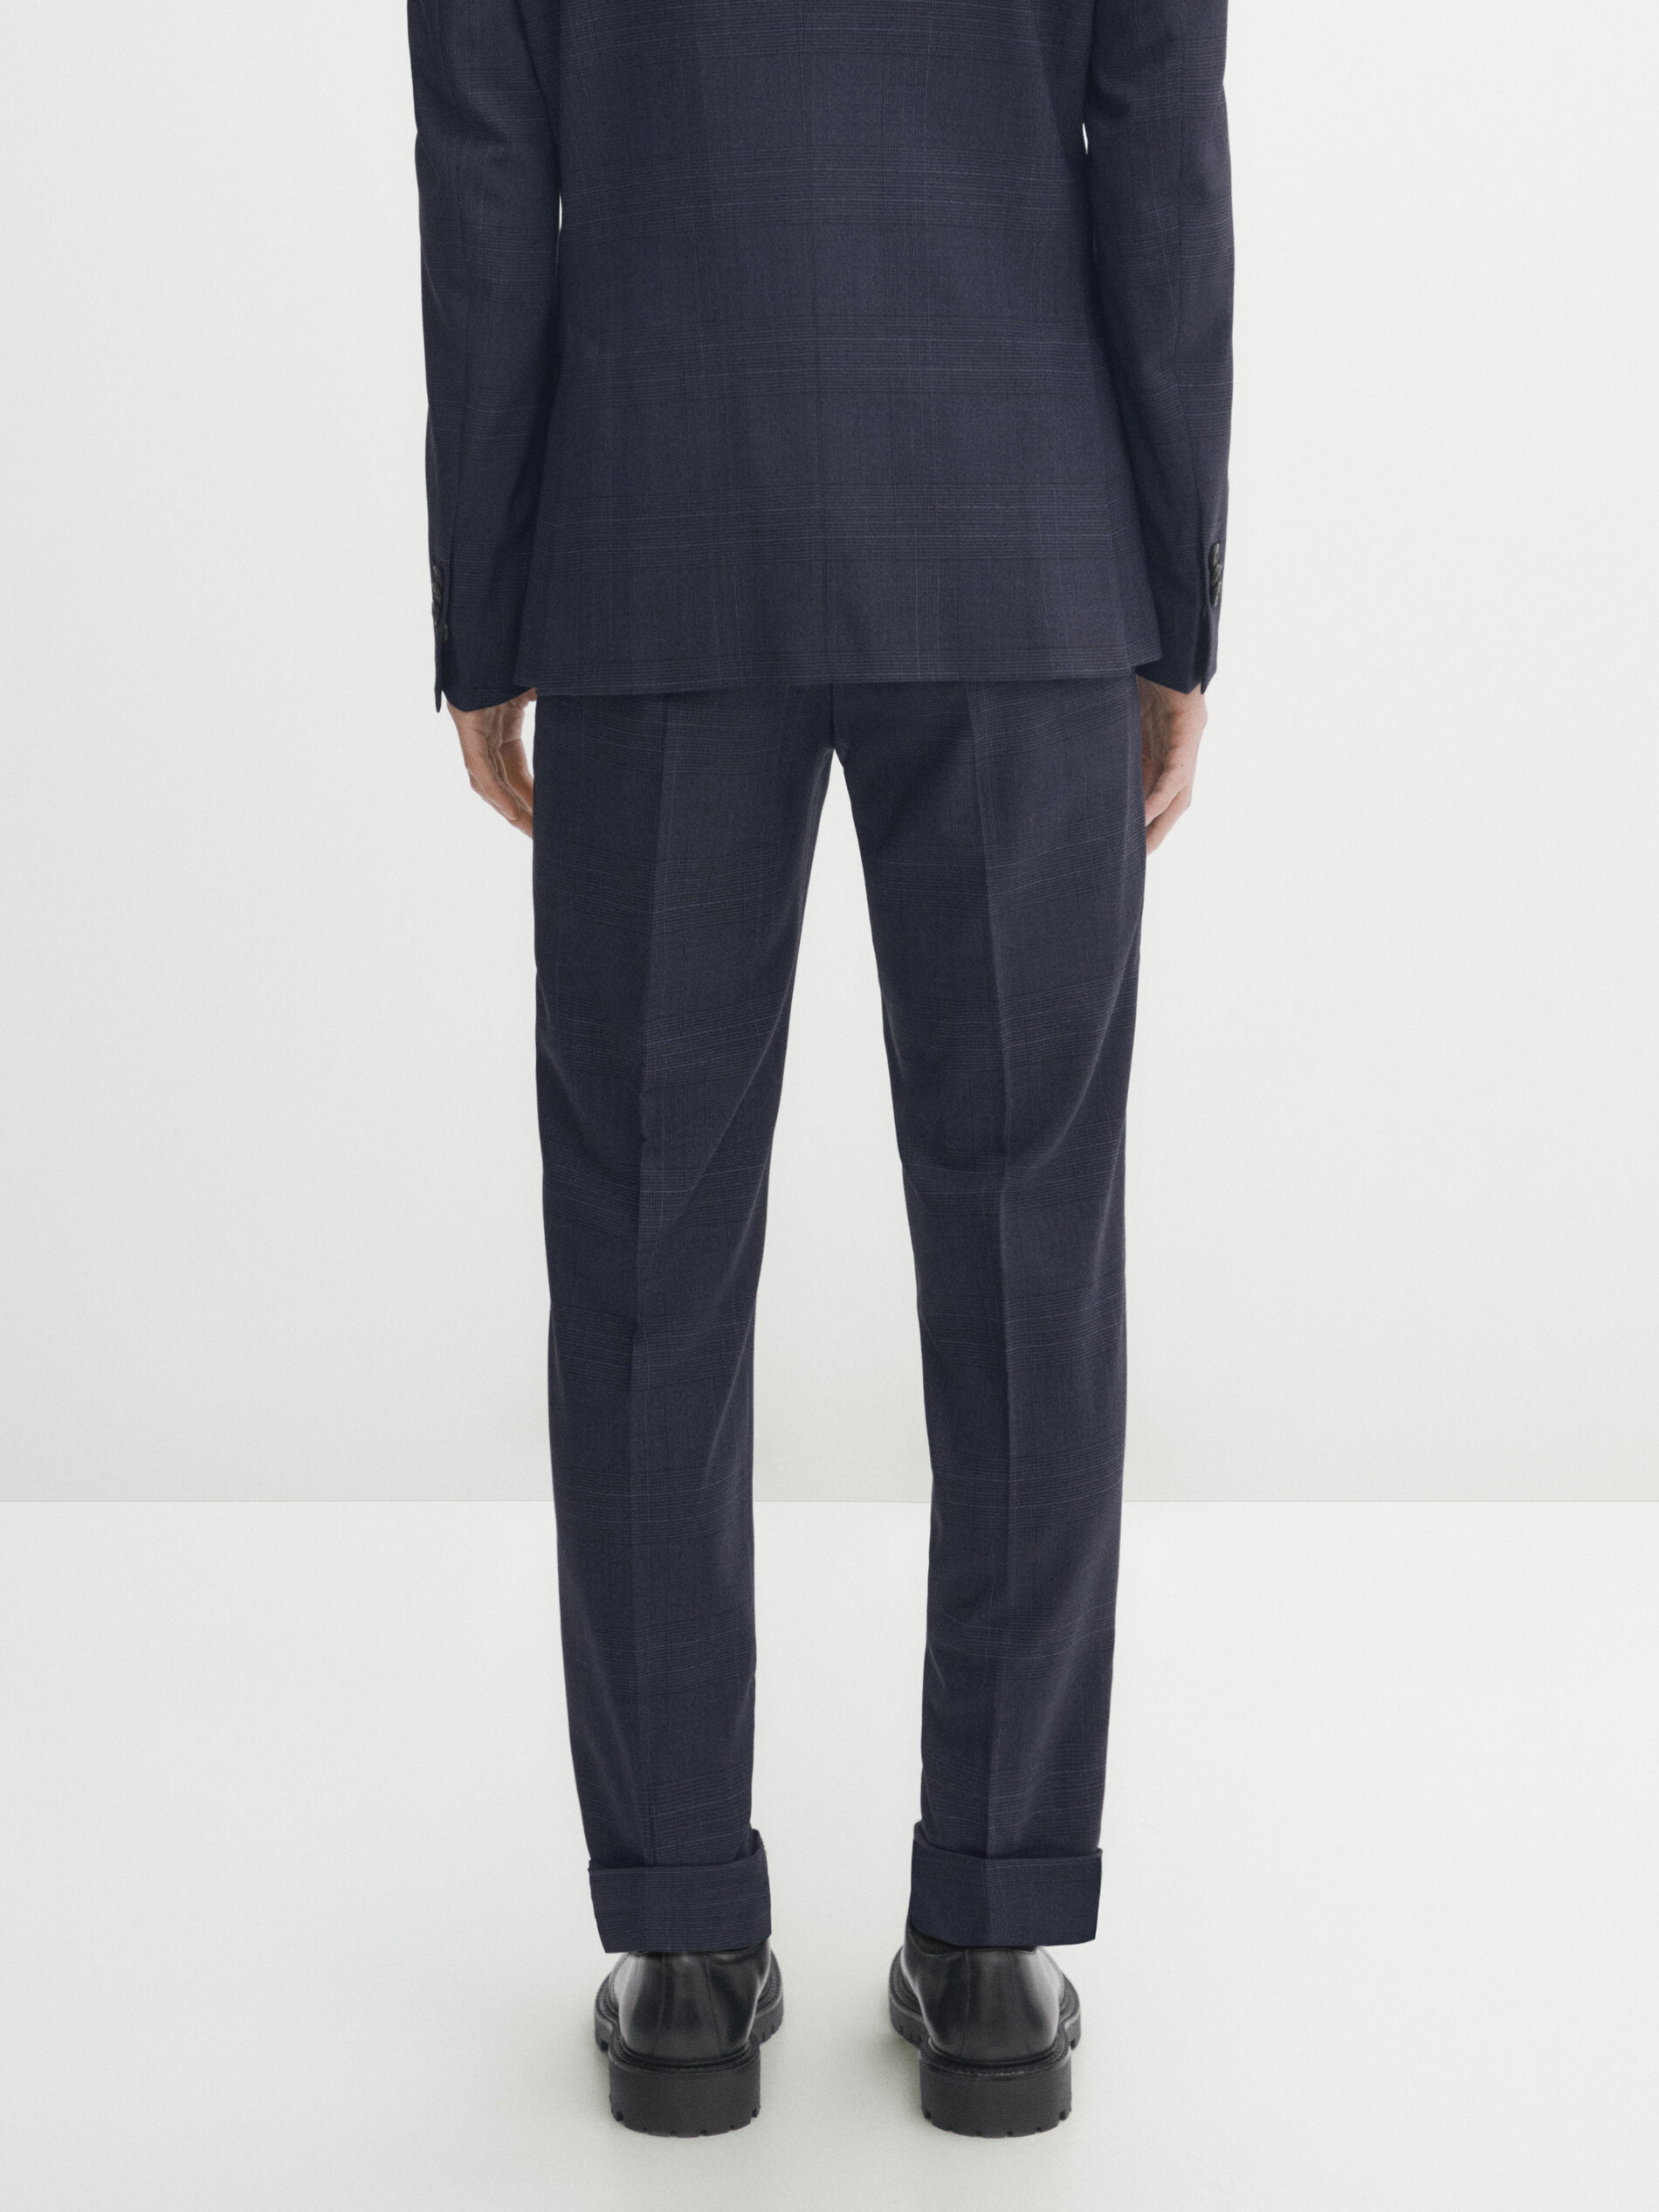 Dark Gray (suit+trousers) Blue Suit Men's Suit, Fashion Slim Fit Wedding  Dress, Best Man Dress, Business Casual Professional Formal Suit, Men's Suit  | Fruugo KR